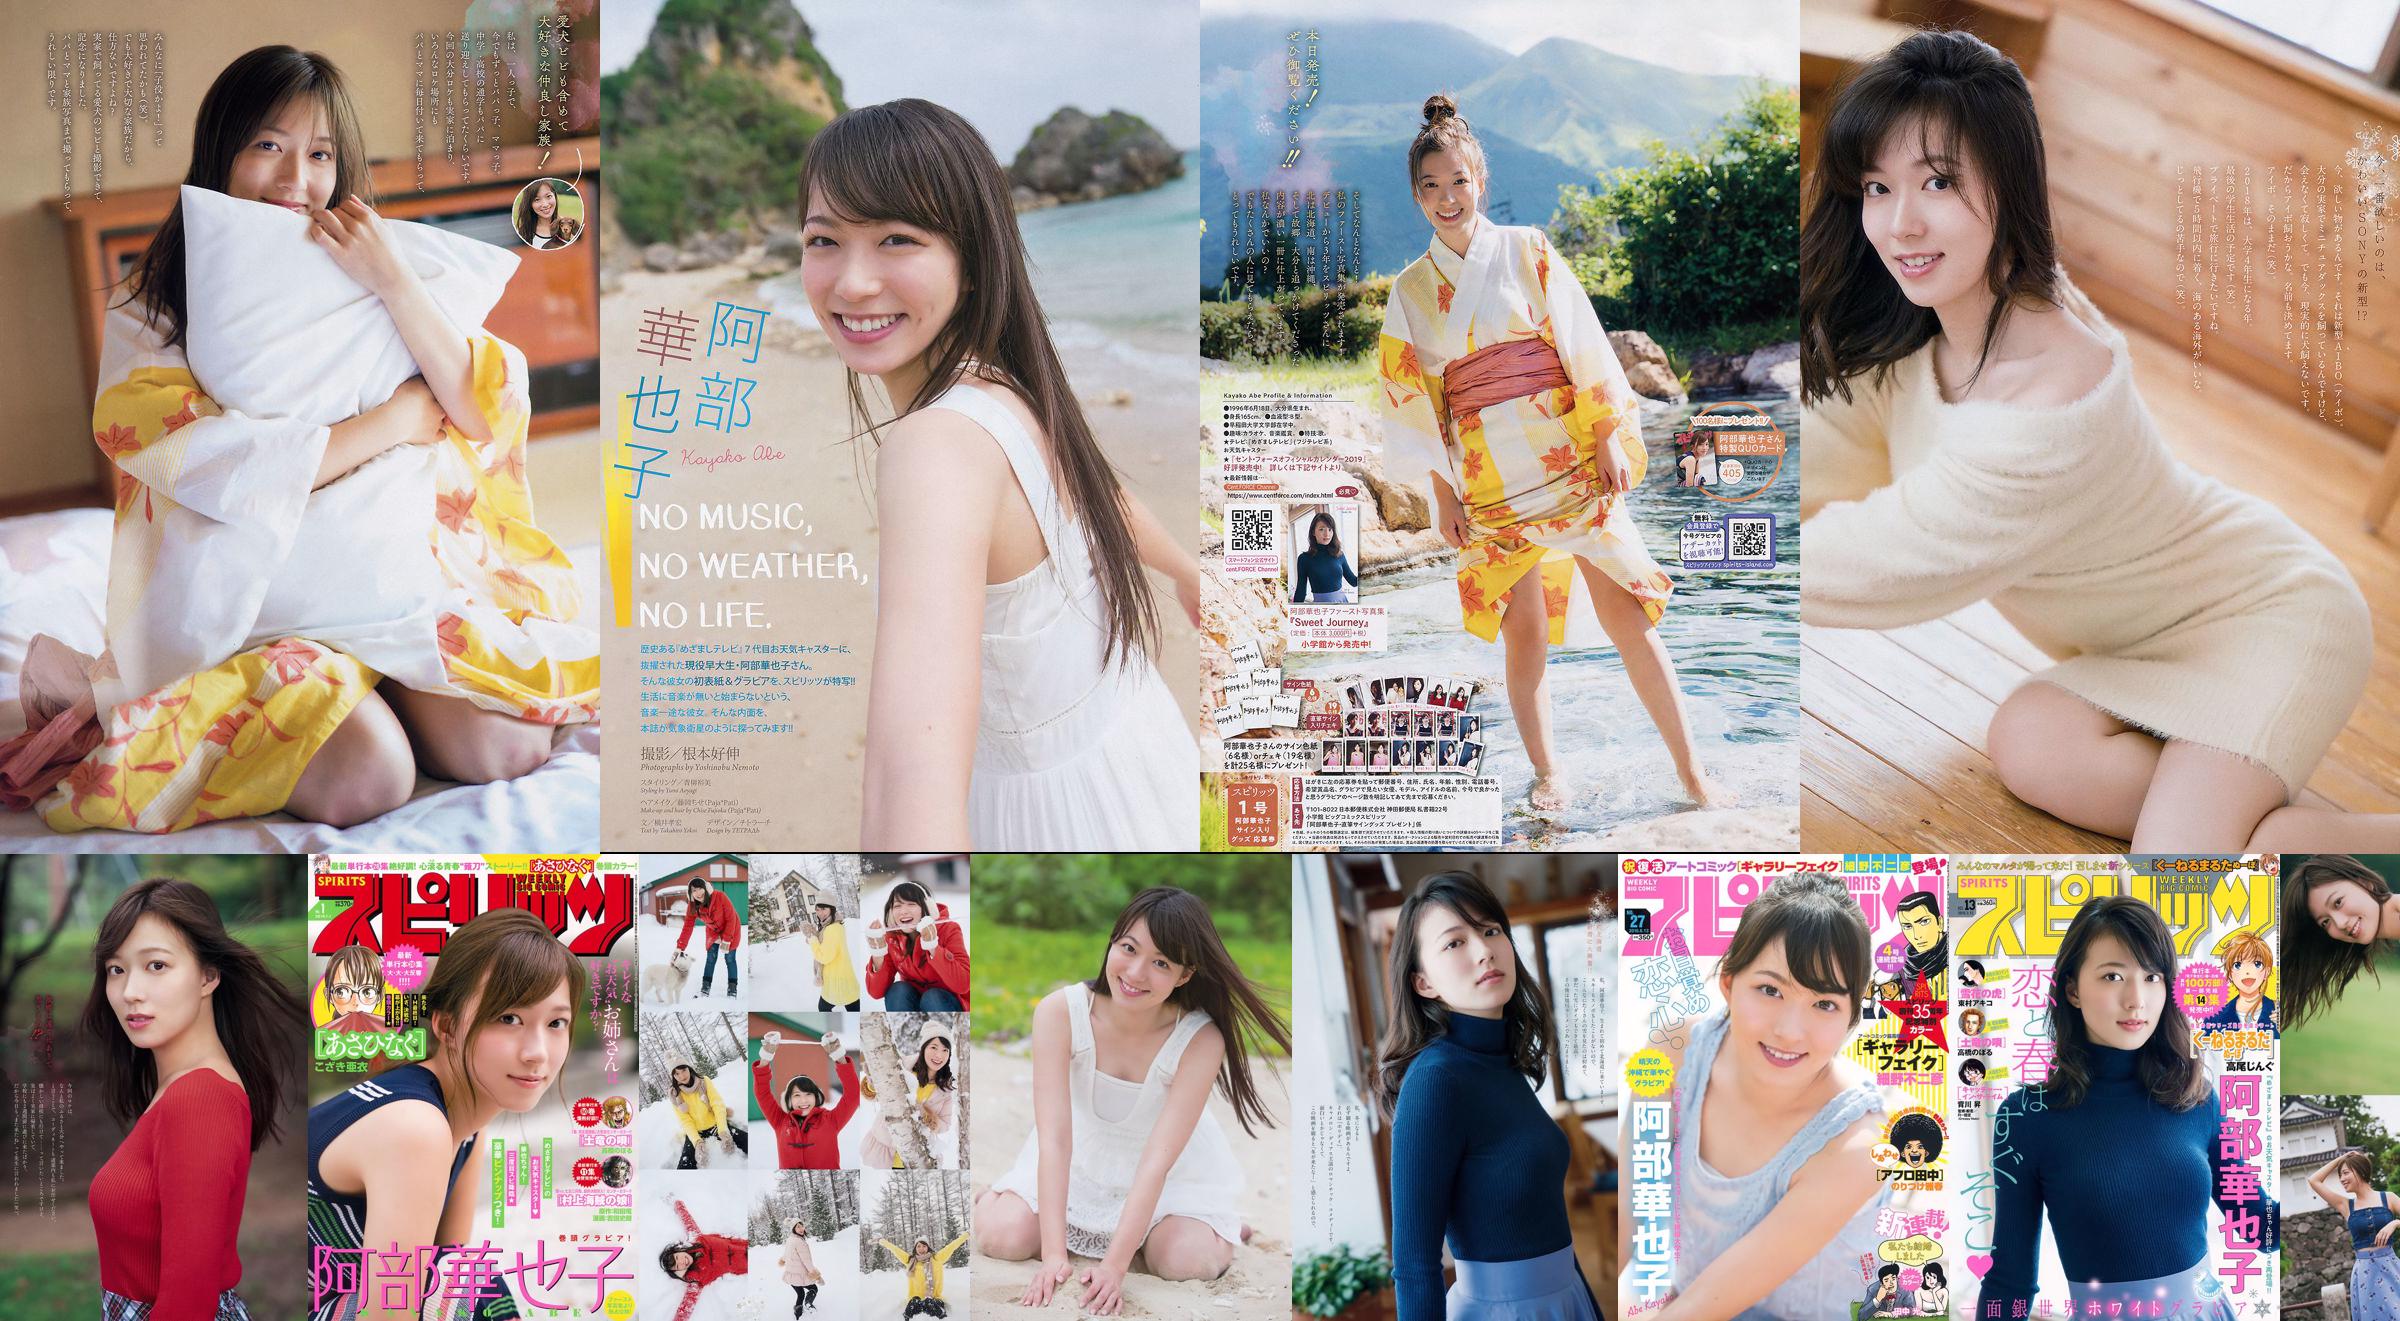 [Weekly Big Comic Spirits] Kayako Abe 2019 No.01 Photo Magazine No.77da0a Page 2